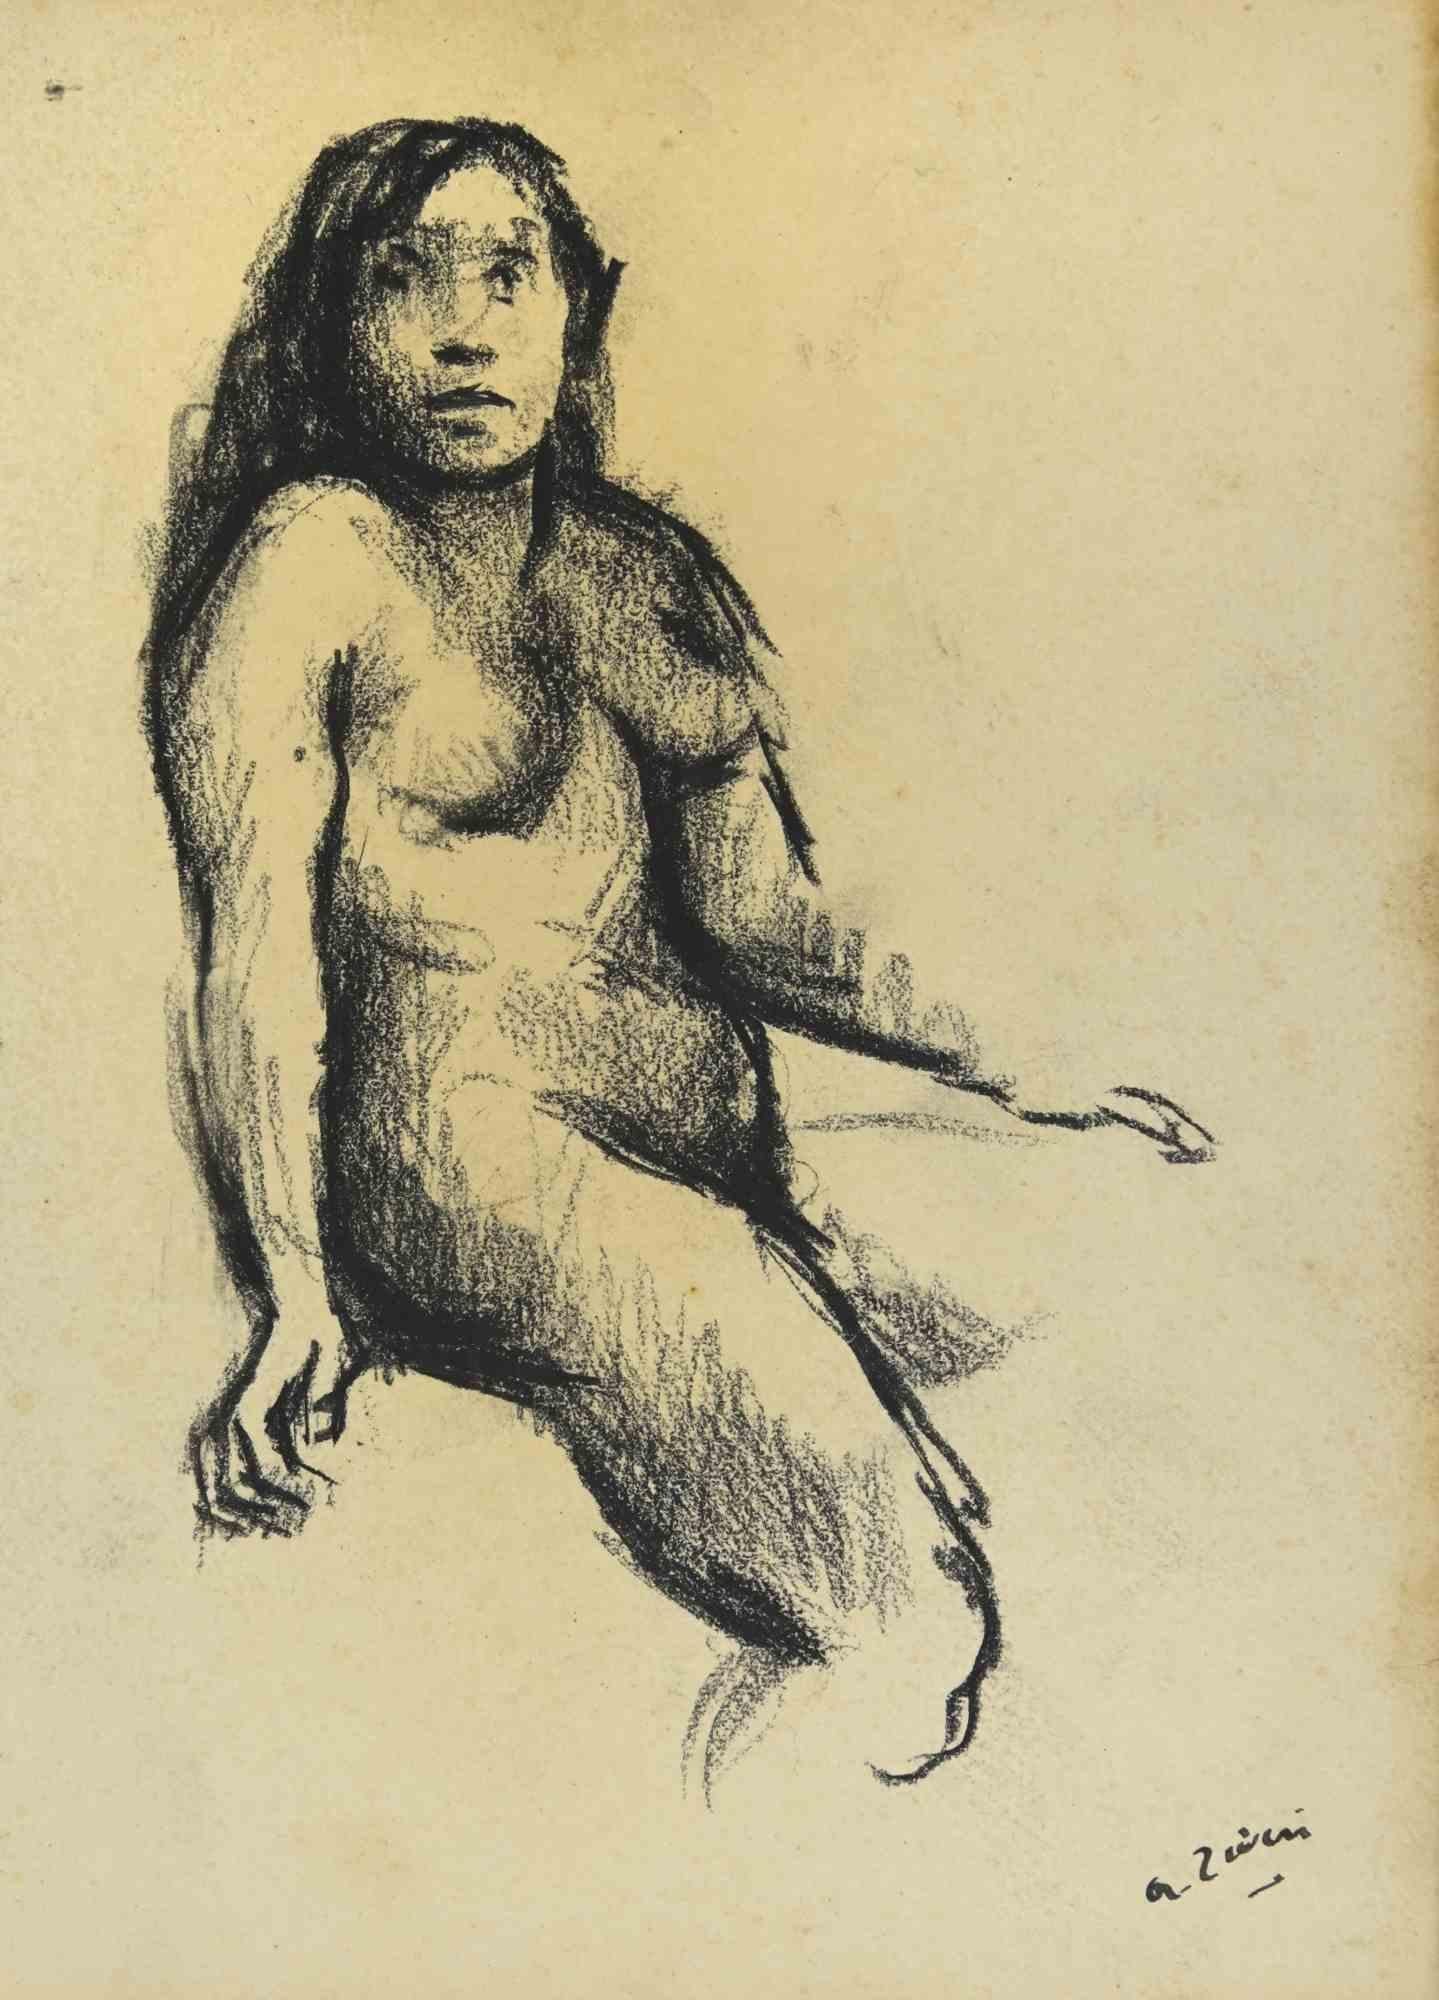 Akt ist eine Zeichnung von Alberto Ziveri aus den 1930er Jahren.

Zeichenkohle auf Papier.

Handsigniert und datiert.

In gutem Zustand mit leichten Stockflecken.

Das Kunstwerk wird durch geschickte Striche meisterhaft dargestellt.

Alberto Ziveri